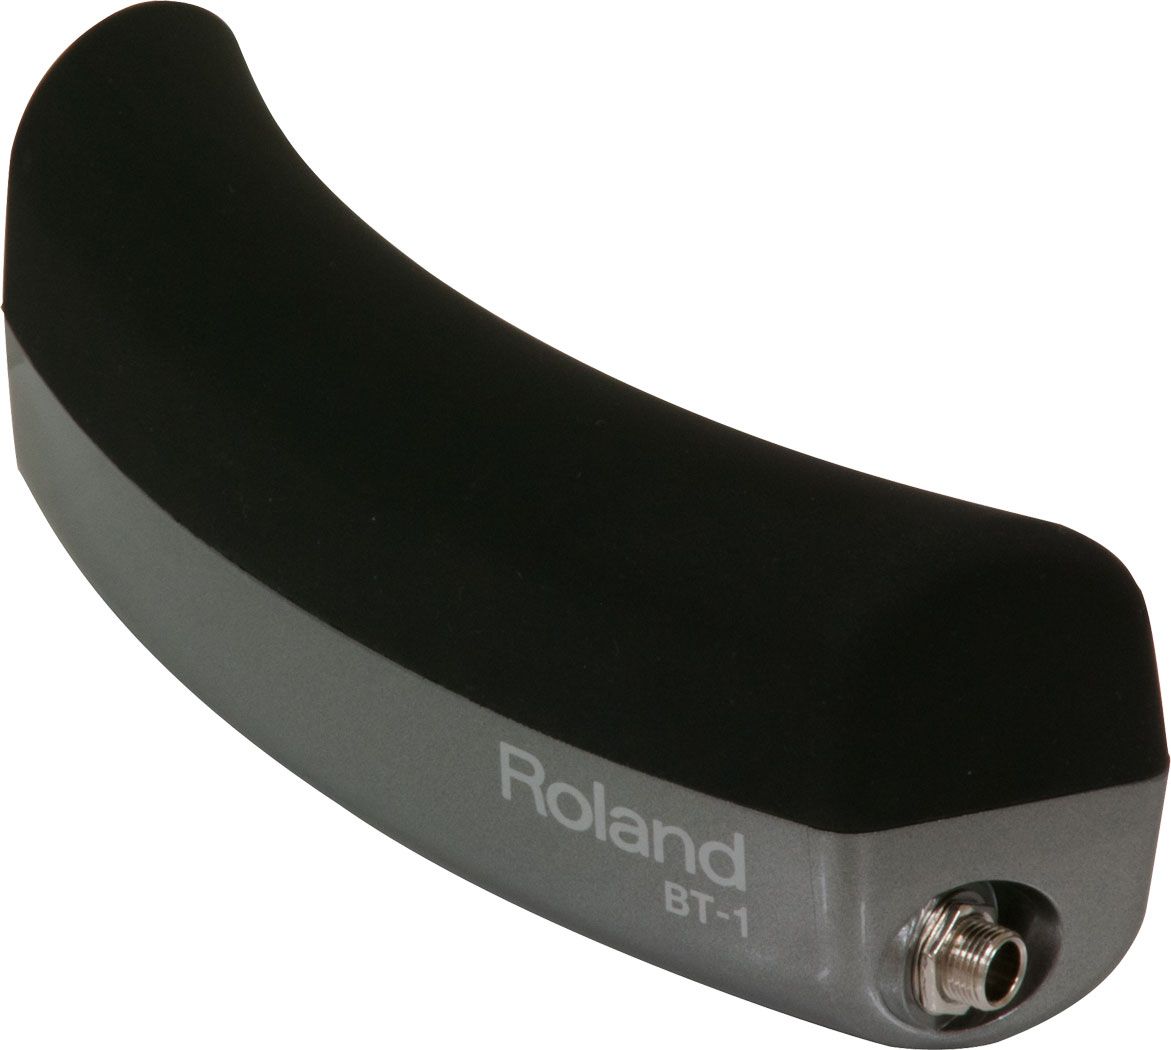 Roland BT 1